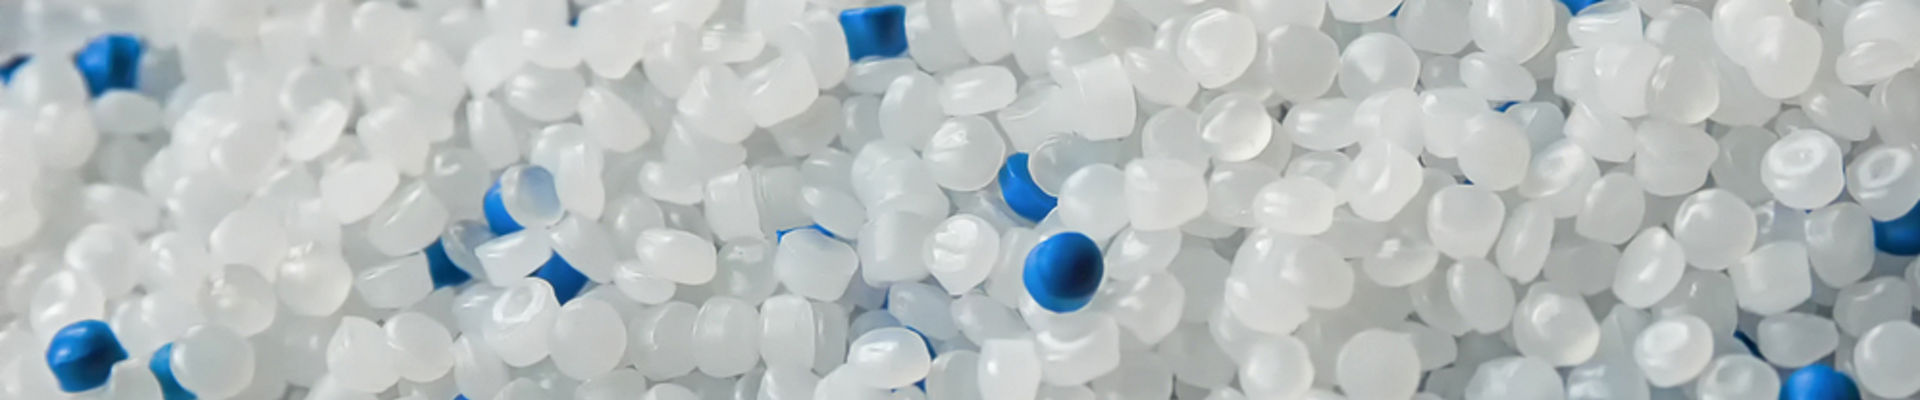 Peletes de polietileno para produção de sacos plásticos